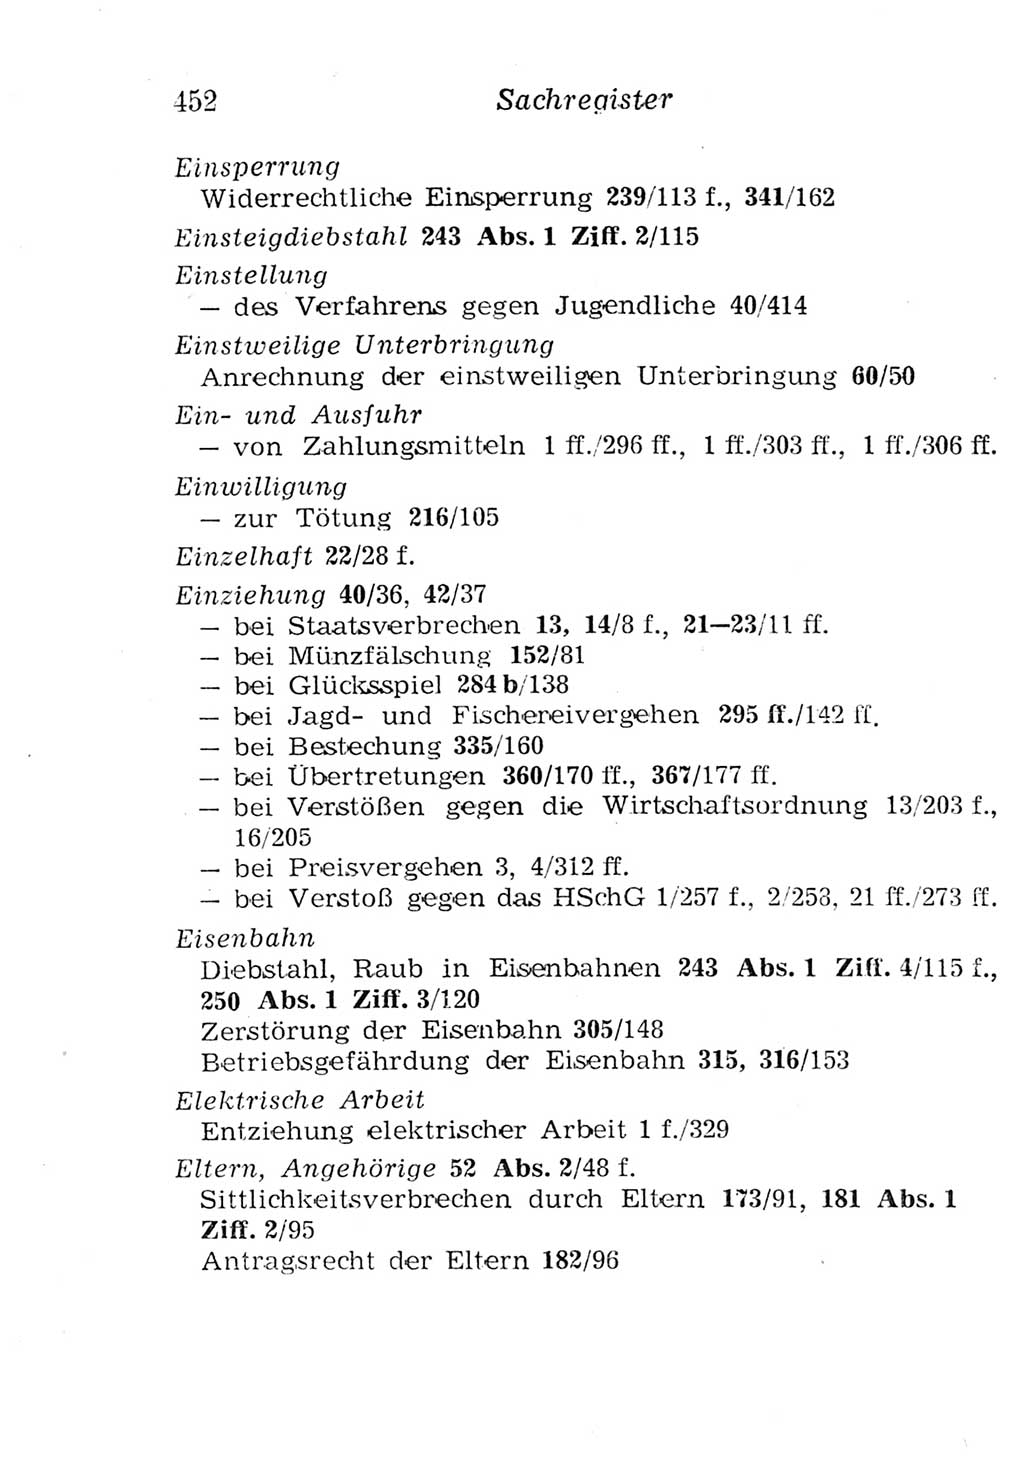 Strafgesetzbuch (StGB) und andere Strafgesetze [Deutsche Demokratische Republik (DDR)] 1957, Seite 452 (StGB Strafges. DDR 1957, S. 452)